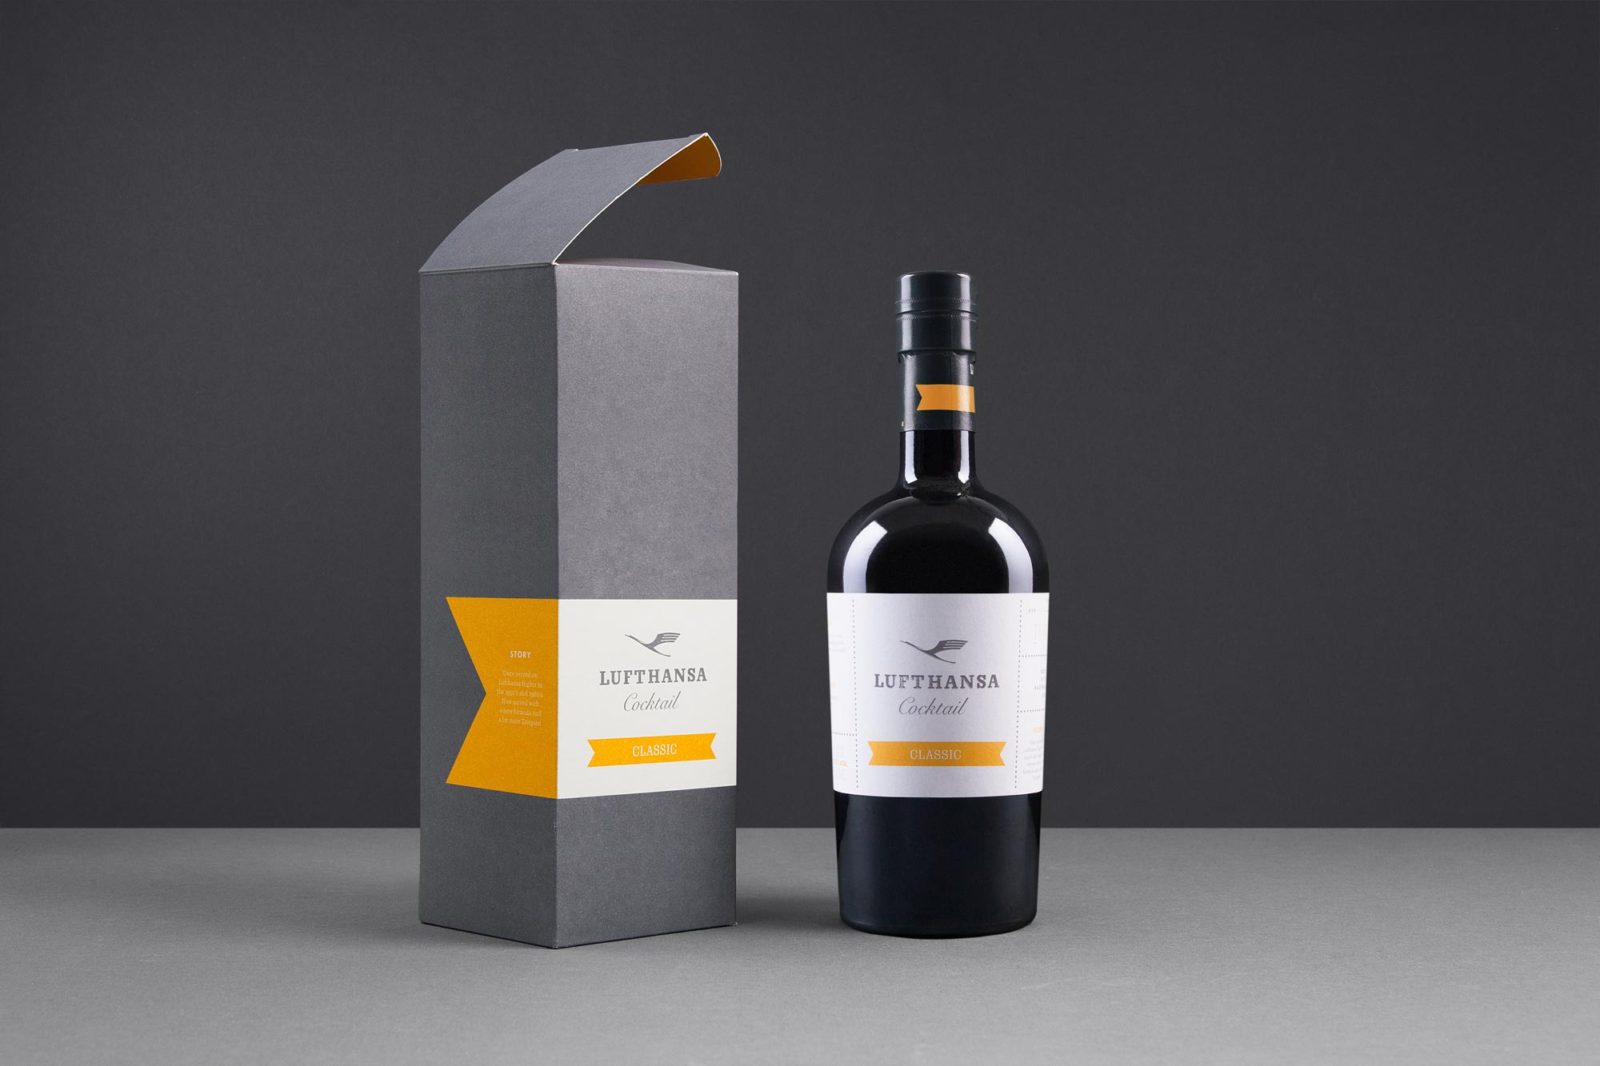 Editienne Grafikdesign - Kommunikationsdesign Berlin- Brand Packaging Design- Spreewood Distillers- Lufthansa Cocktail 22